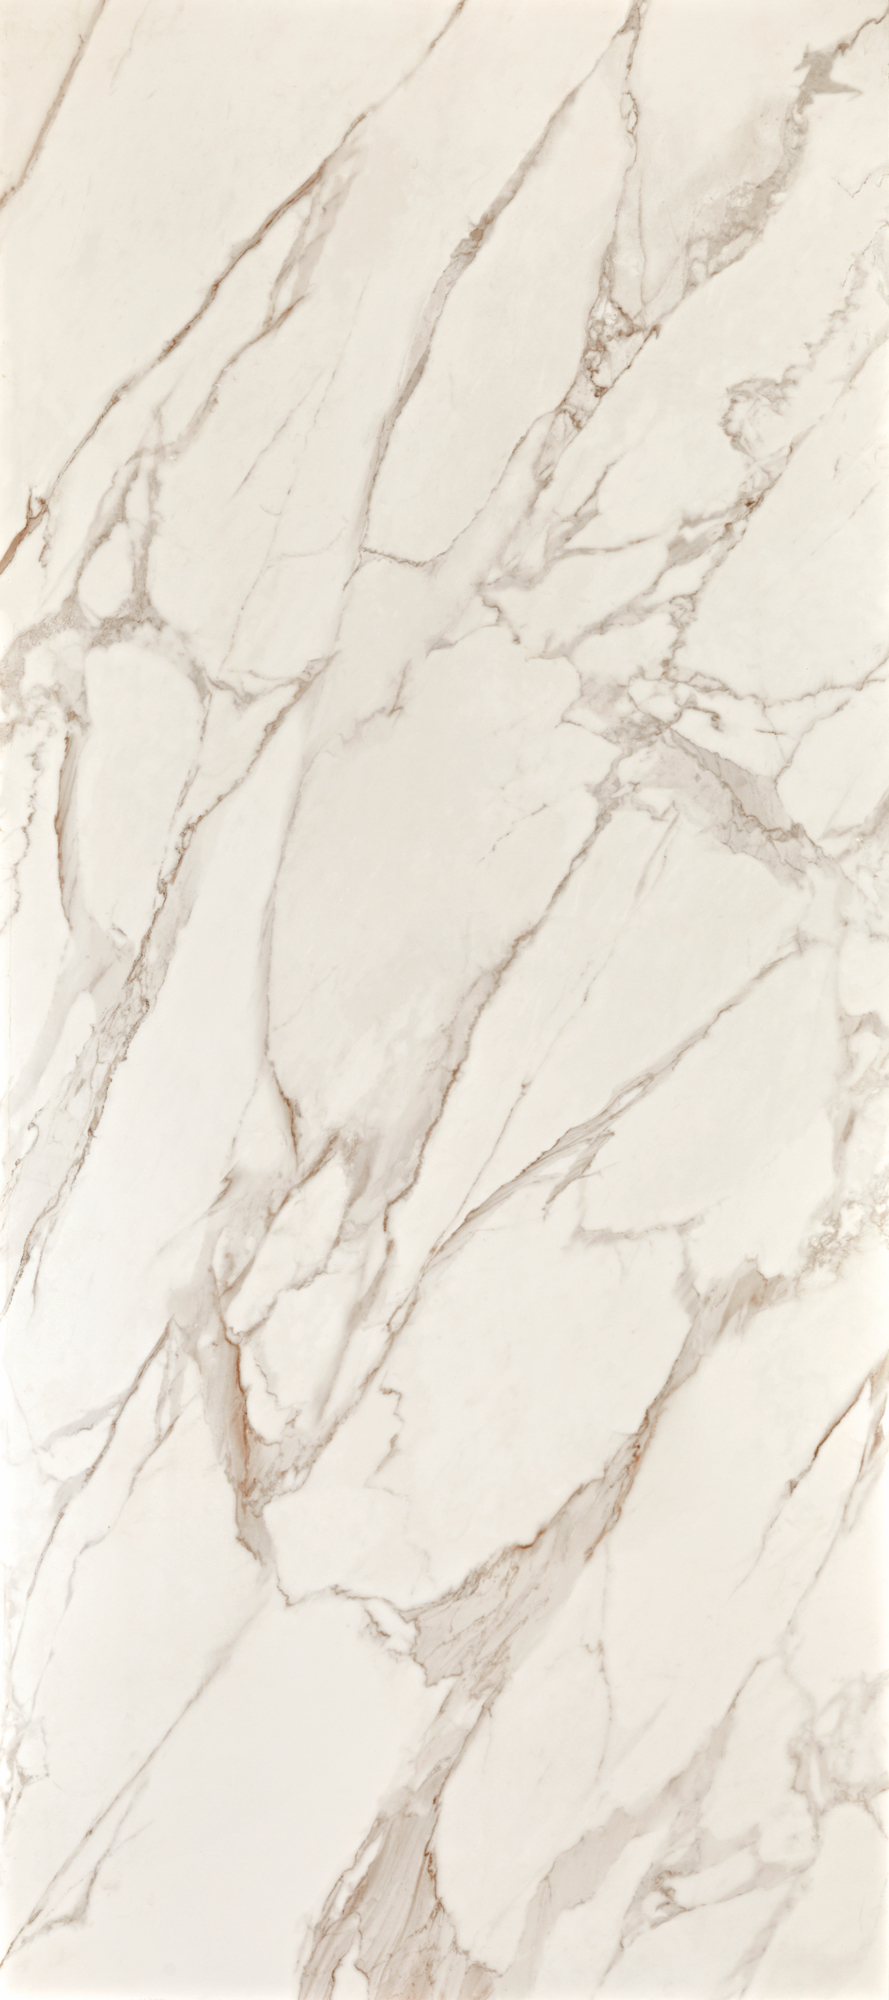 O Bianco di Lucca é um dos mármores brancos mais famosos da Itália. A Portobello possui produtos capazes de recriarem fielmente a textura dele